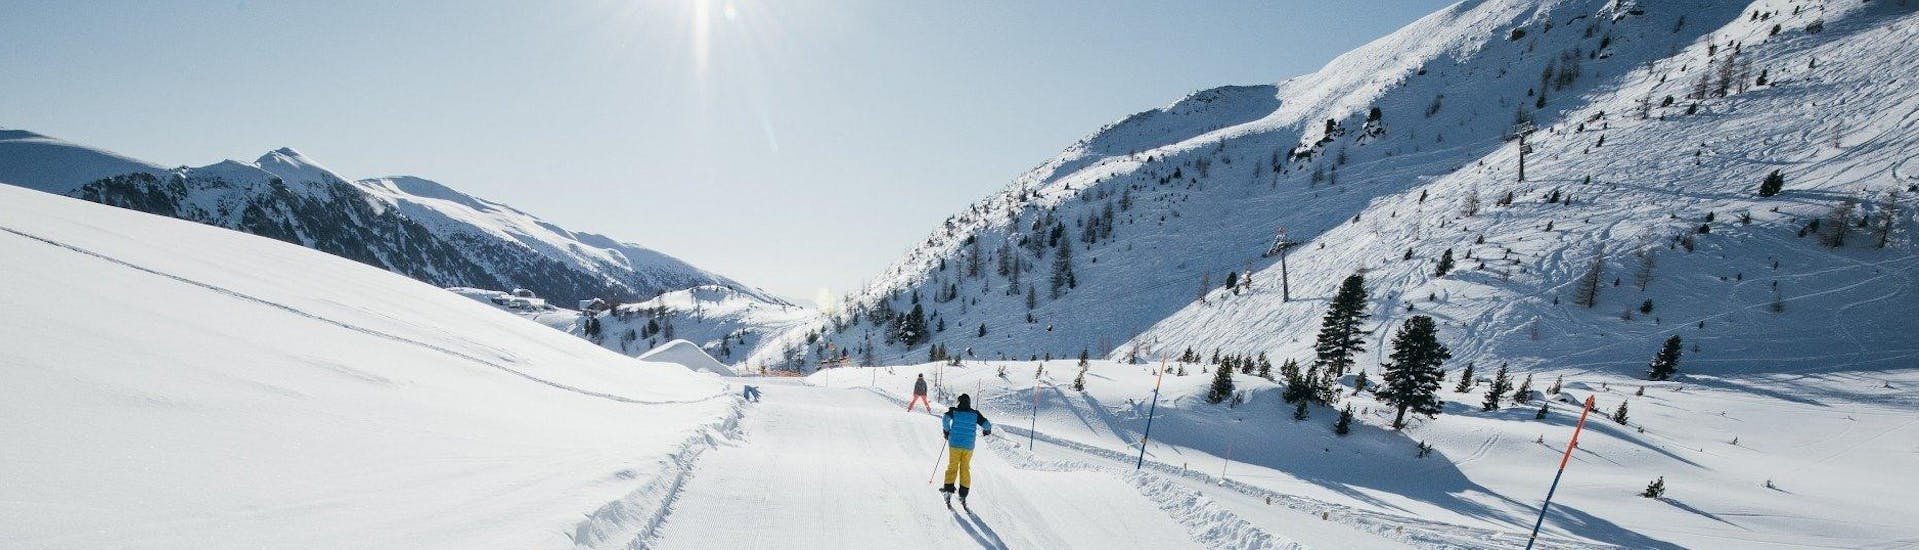 Ausblick auf die sonnige Berglandschaft beim Skifahren lernen mit den Skischulen auf der Turracher Höhe.